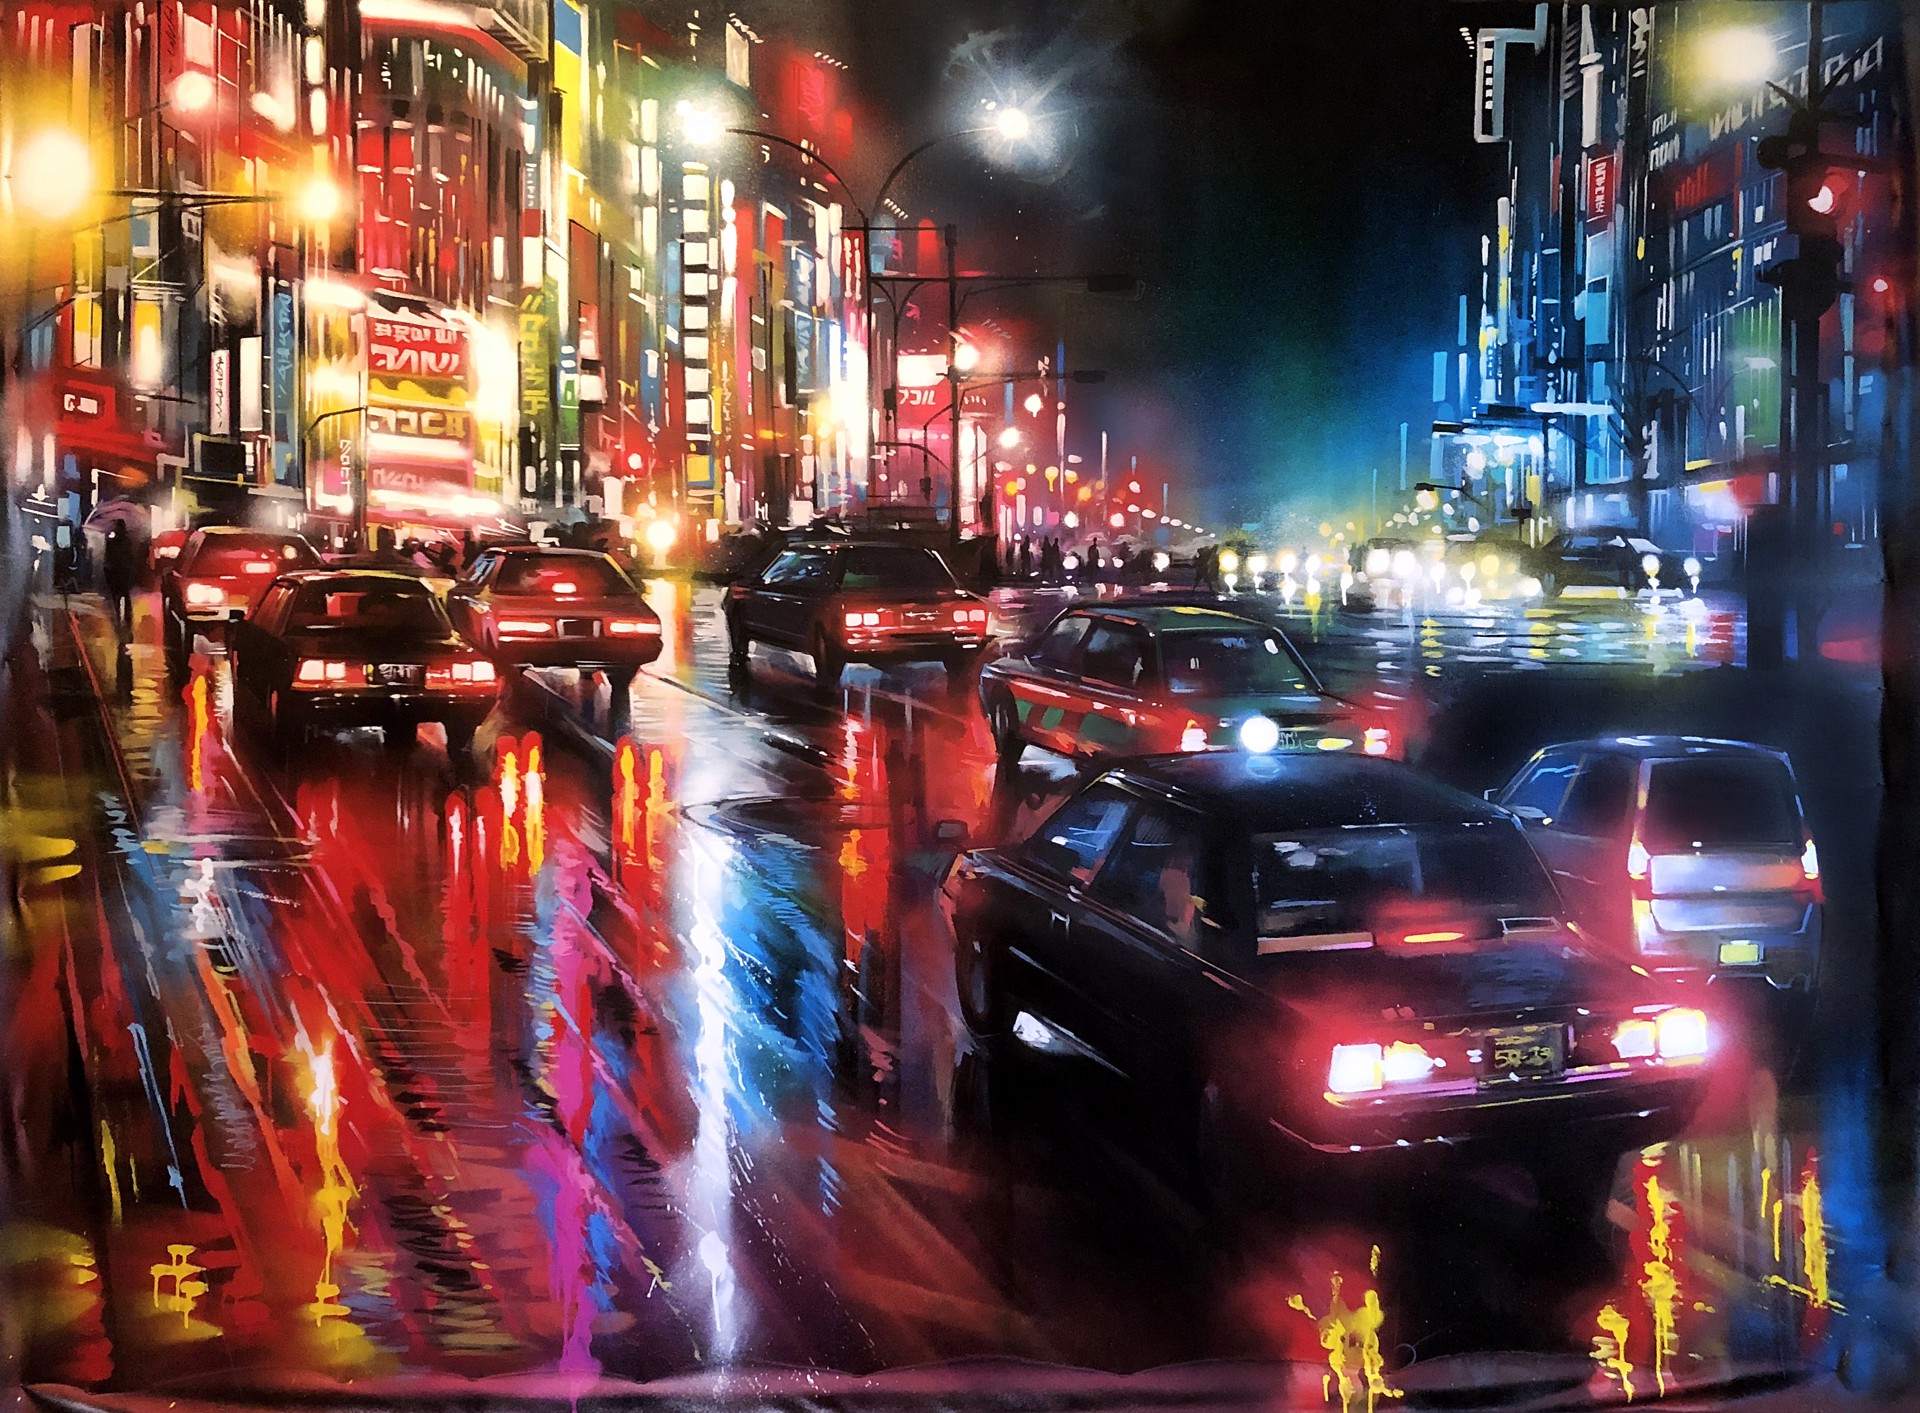 Tokyo Rush by Dan Kitchener